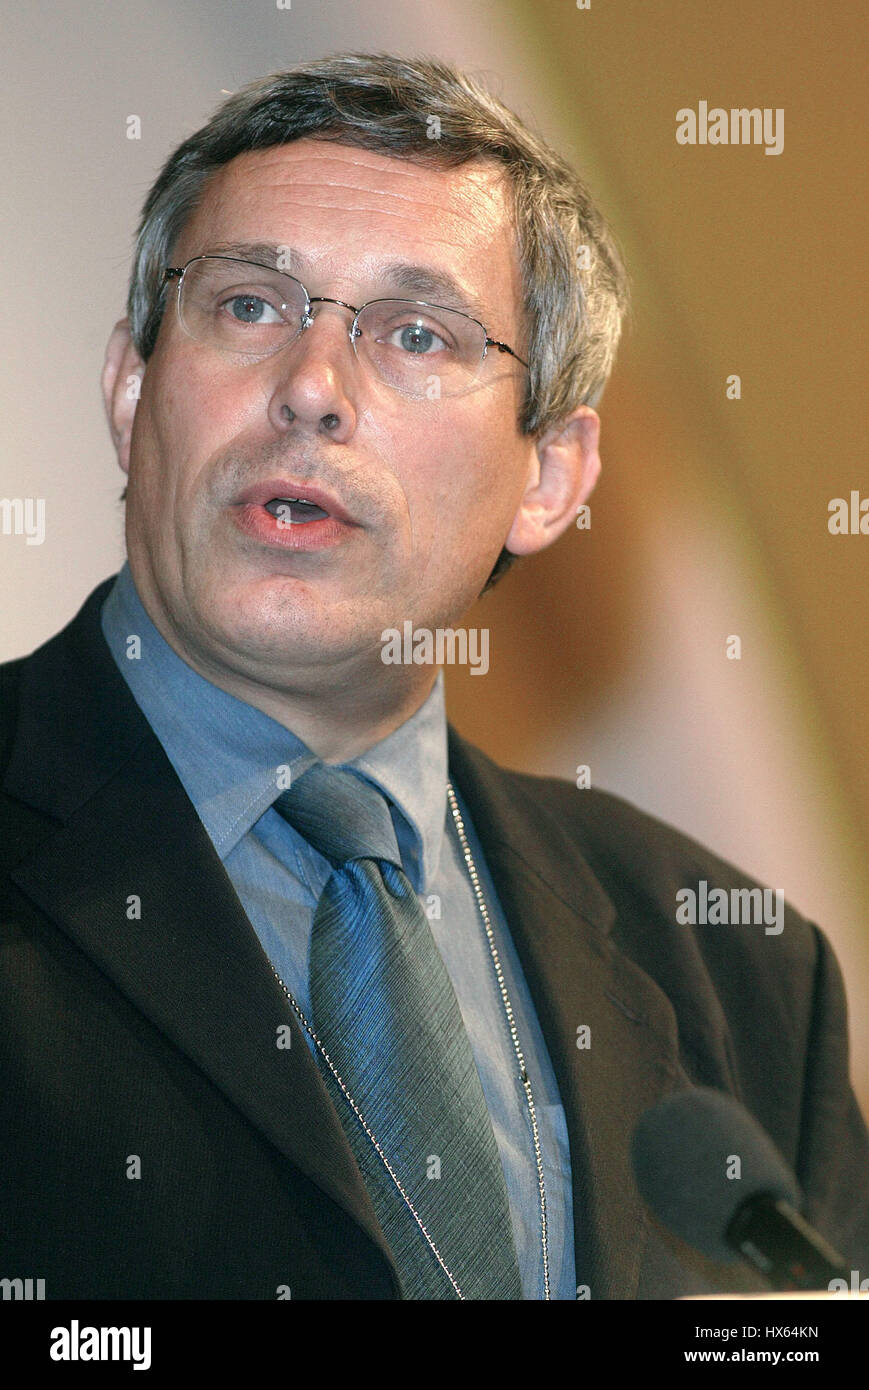 PAUL HOLMES MP Parti libéral démocrate 22 septembre 2003 Brighton, Angleterre Banque D'Images